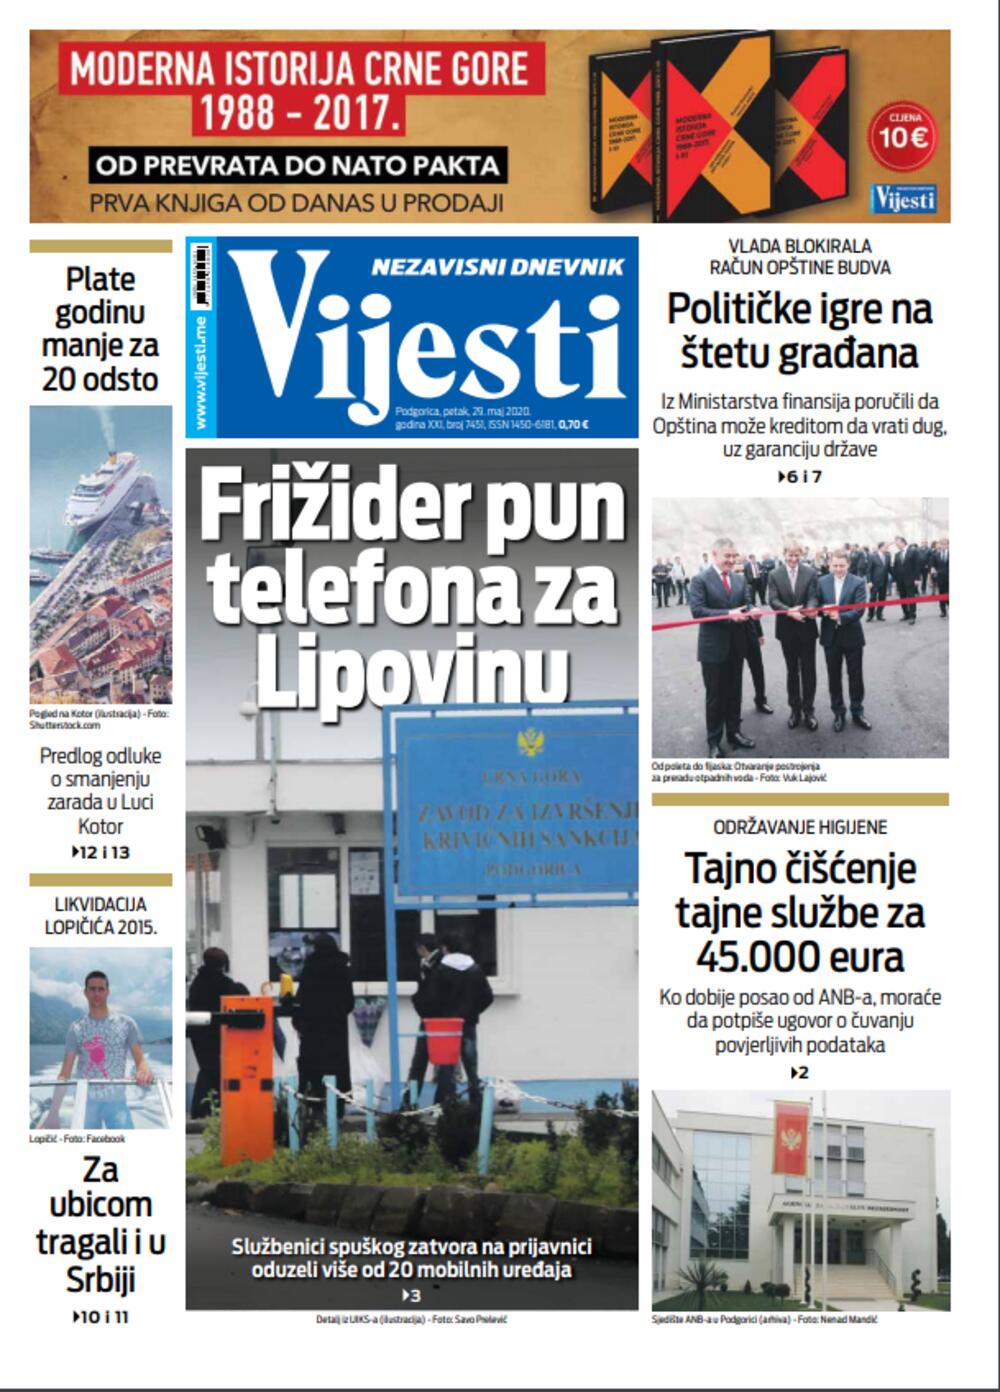 Naslovna strana "Vijesti" za 29.5.2020., Foto: Vijesti